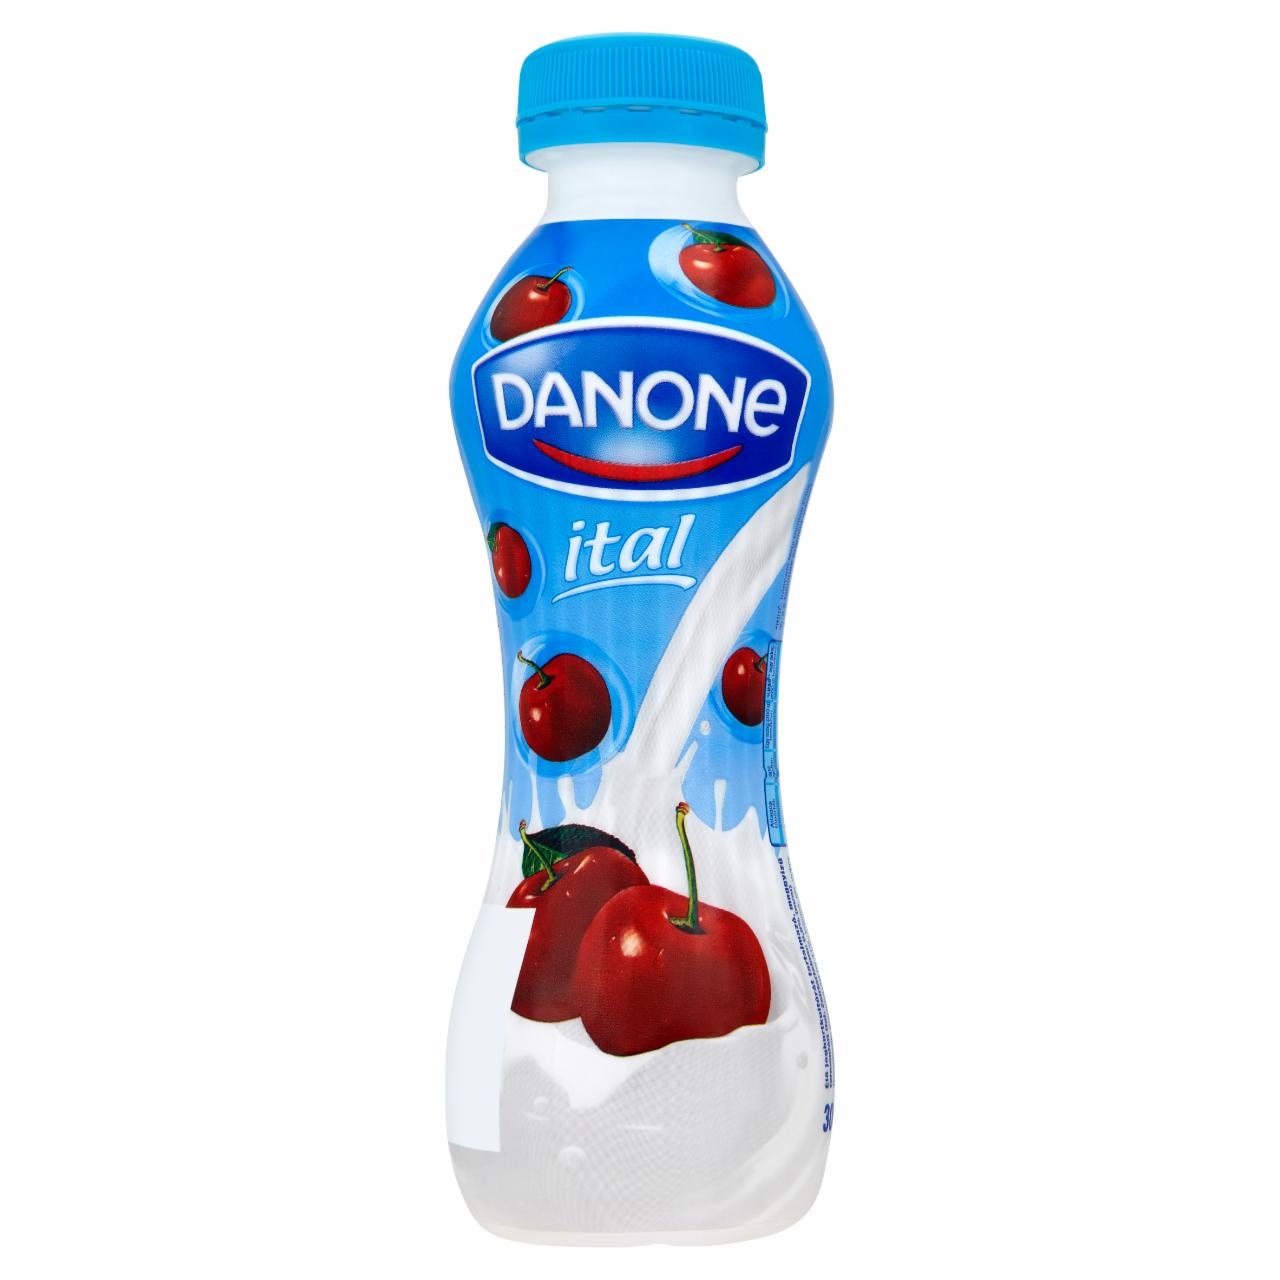 Képek - Danone meggyízű ital 300 g